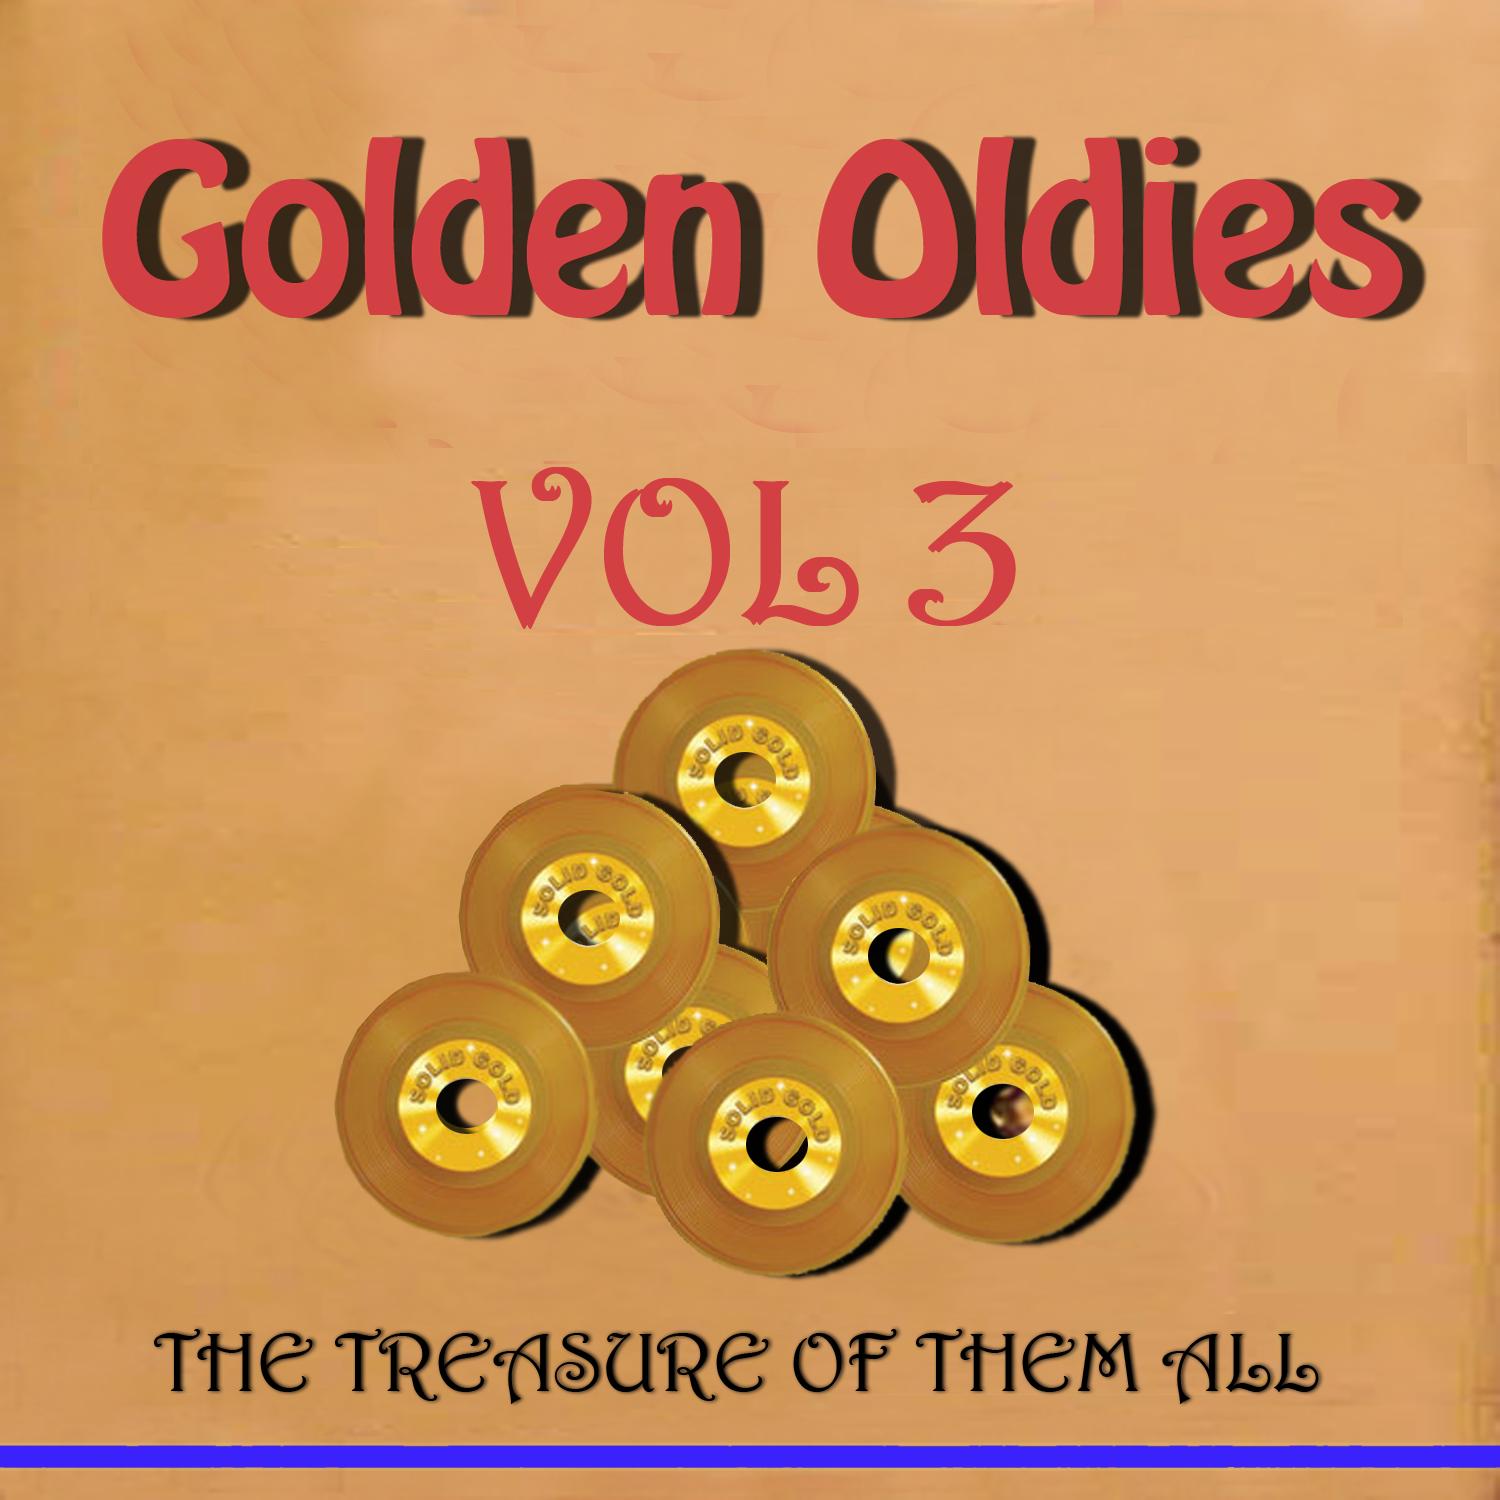 Golden Oldies Vol 3